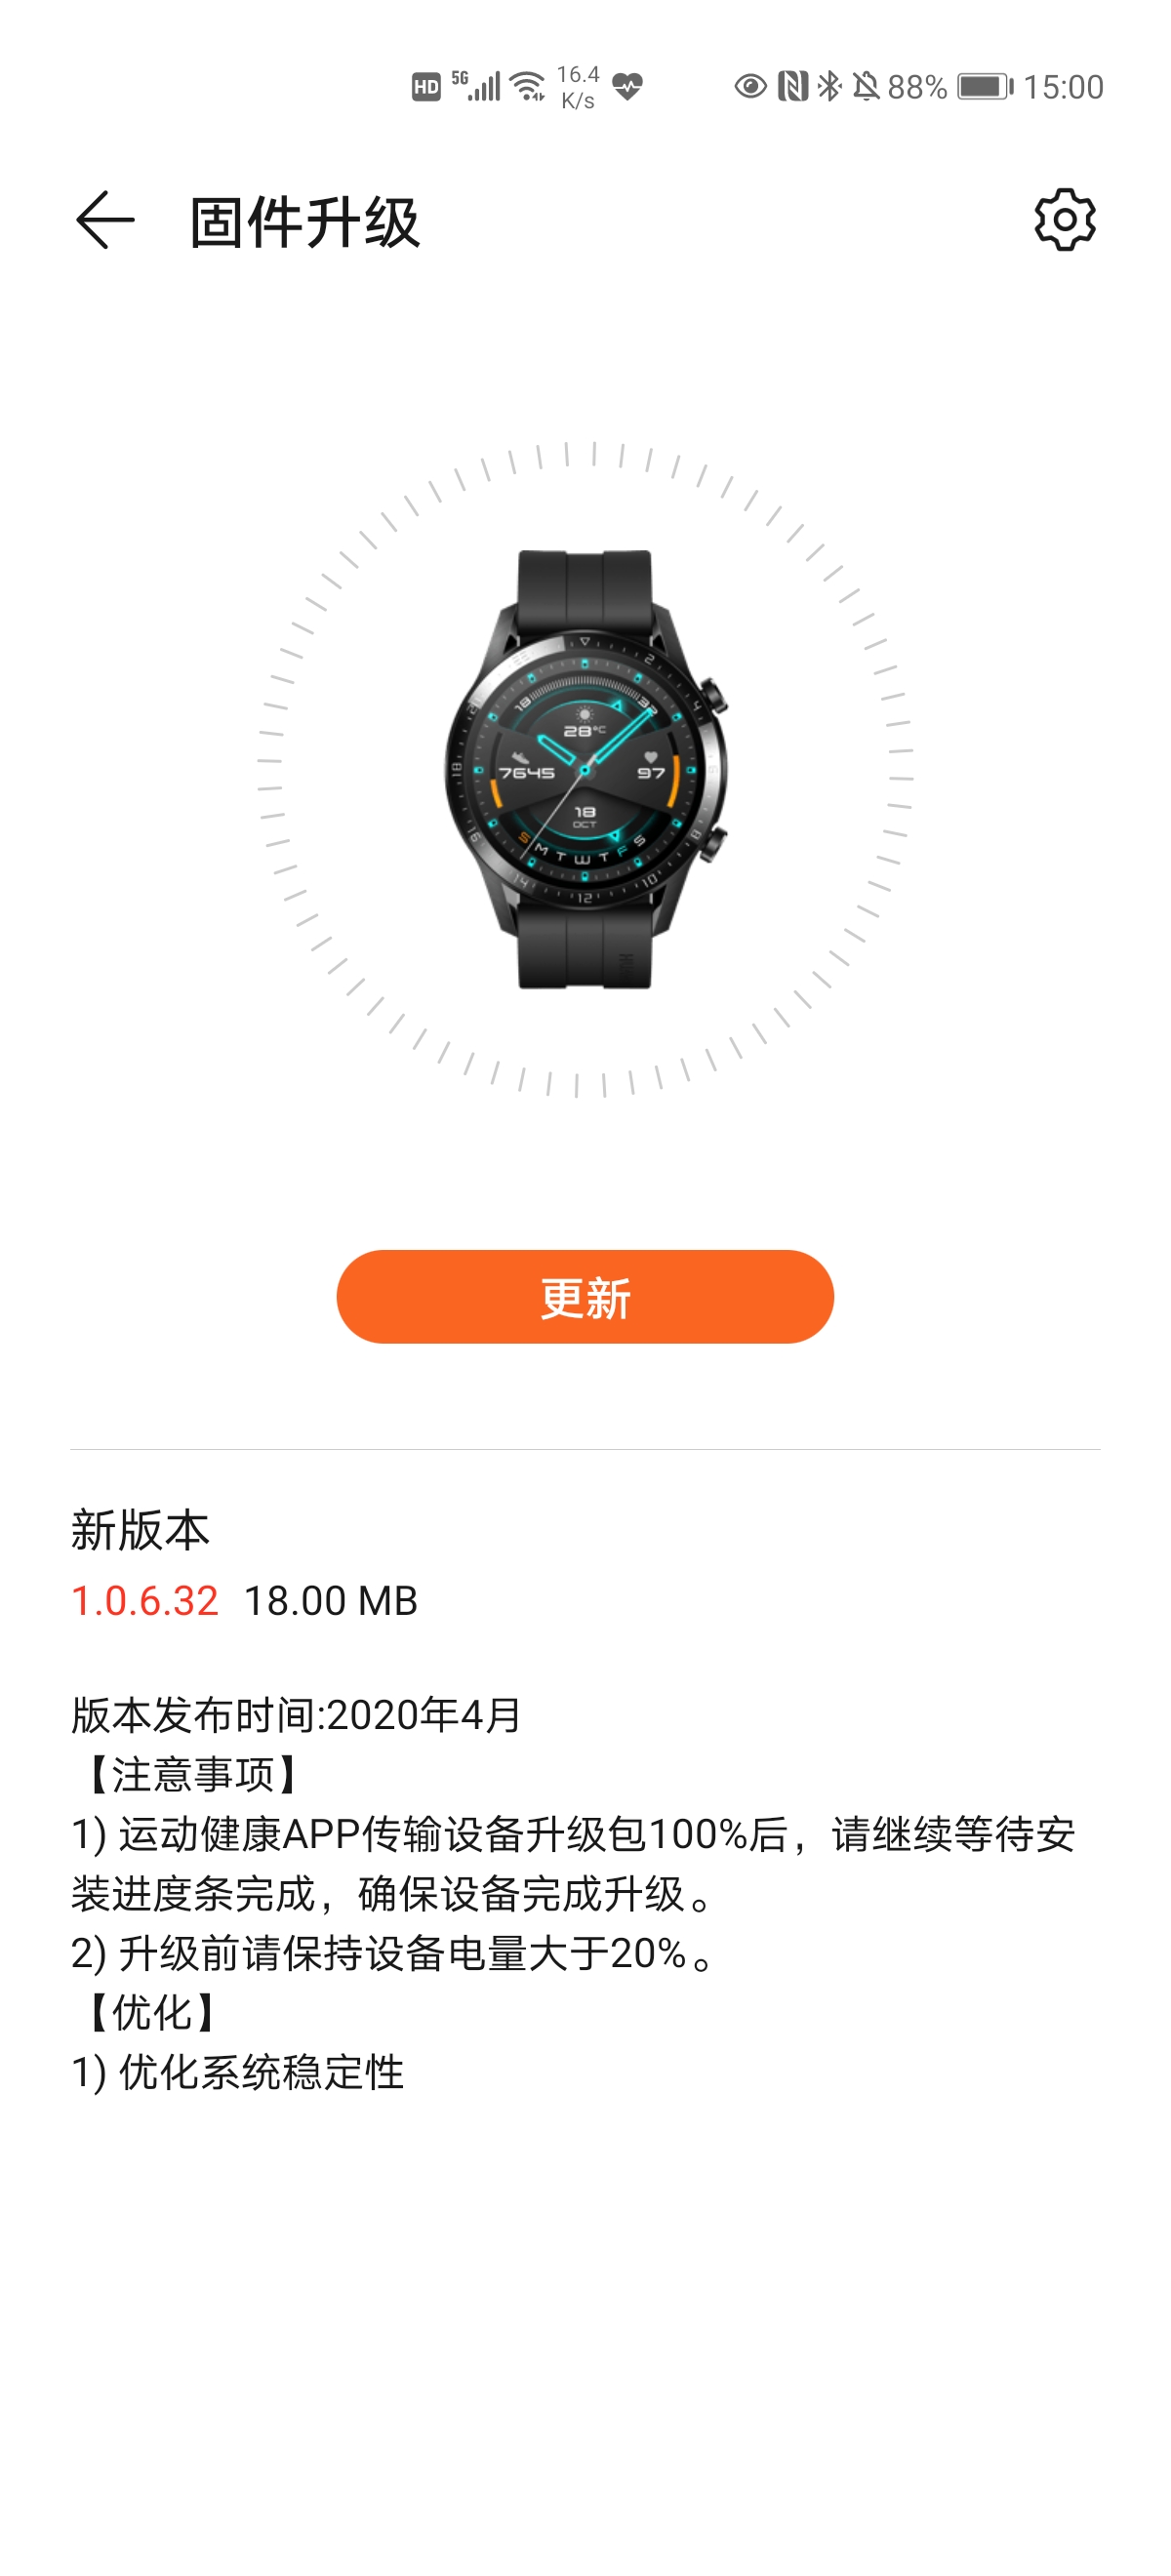 Huawei Watch GT 2 April 2020 Update SpO2